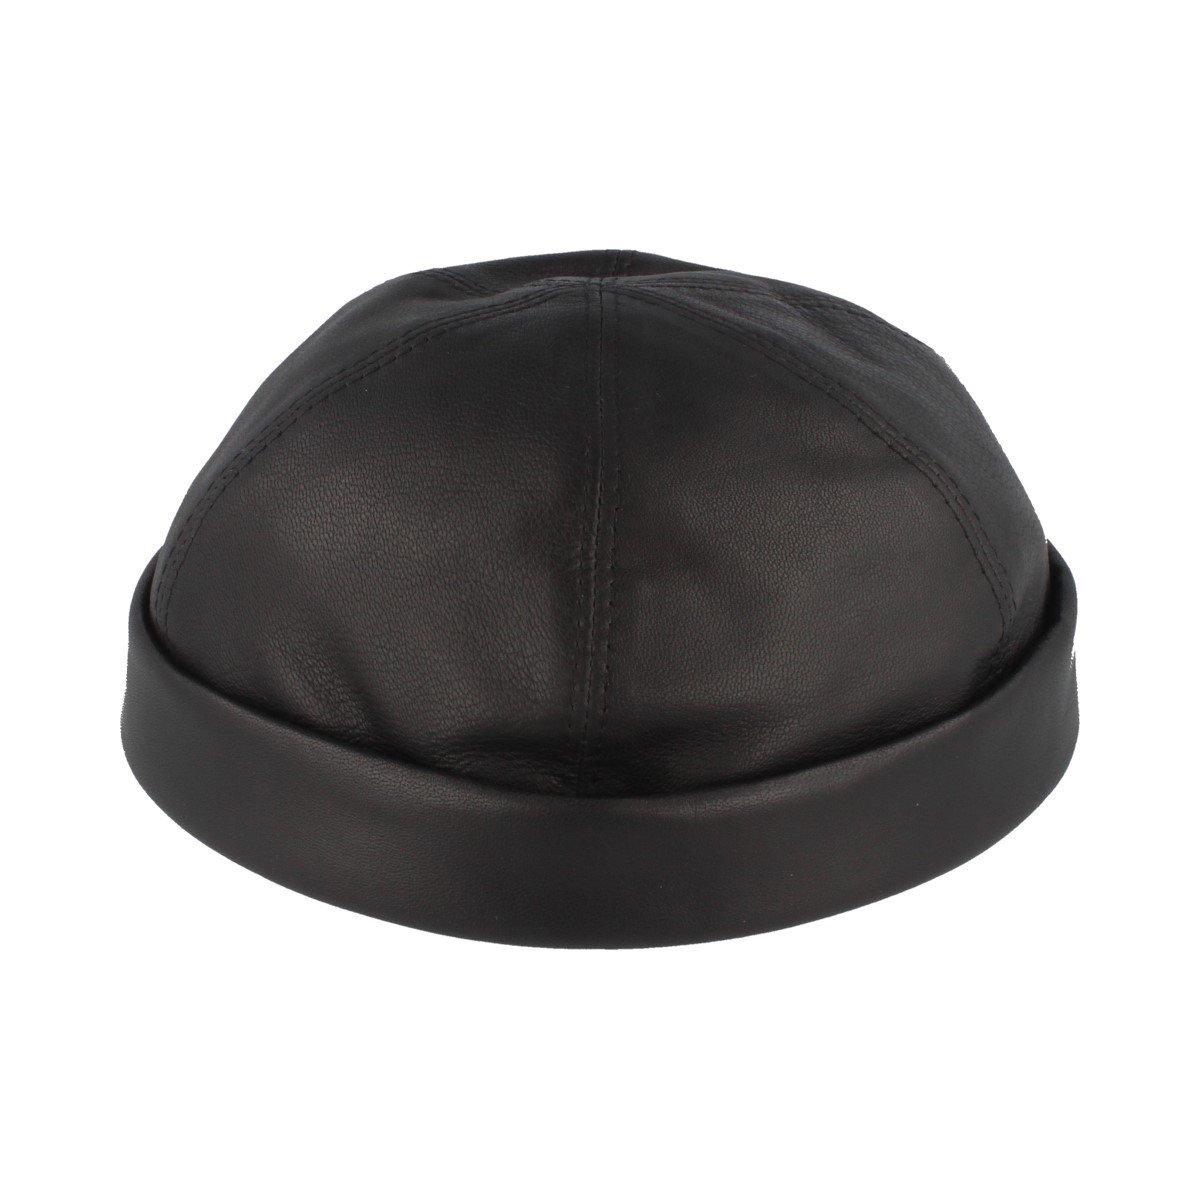 Bullani Docker-Cap | Docker-Mütze | Seemannsmütze aus 100% Leder – Bequem & Hautverträglich (54, schwarz)